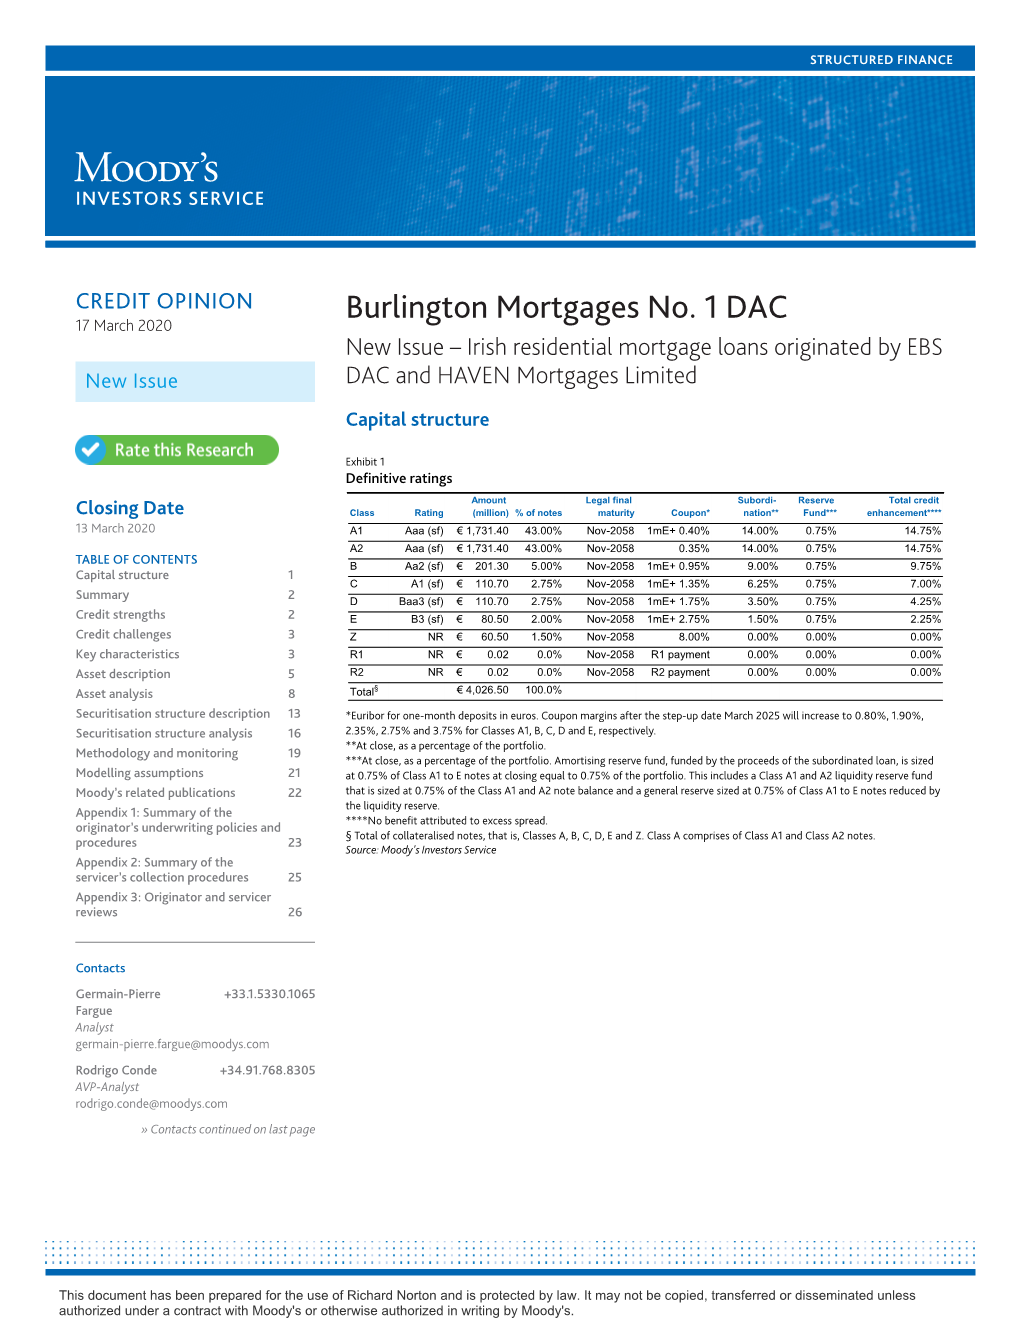 Burlington Mortgages No. 1